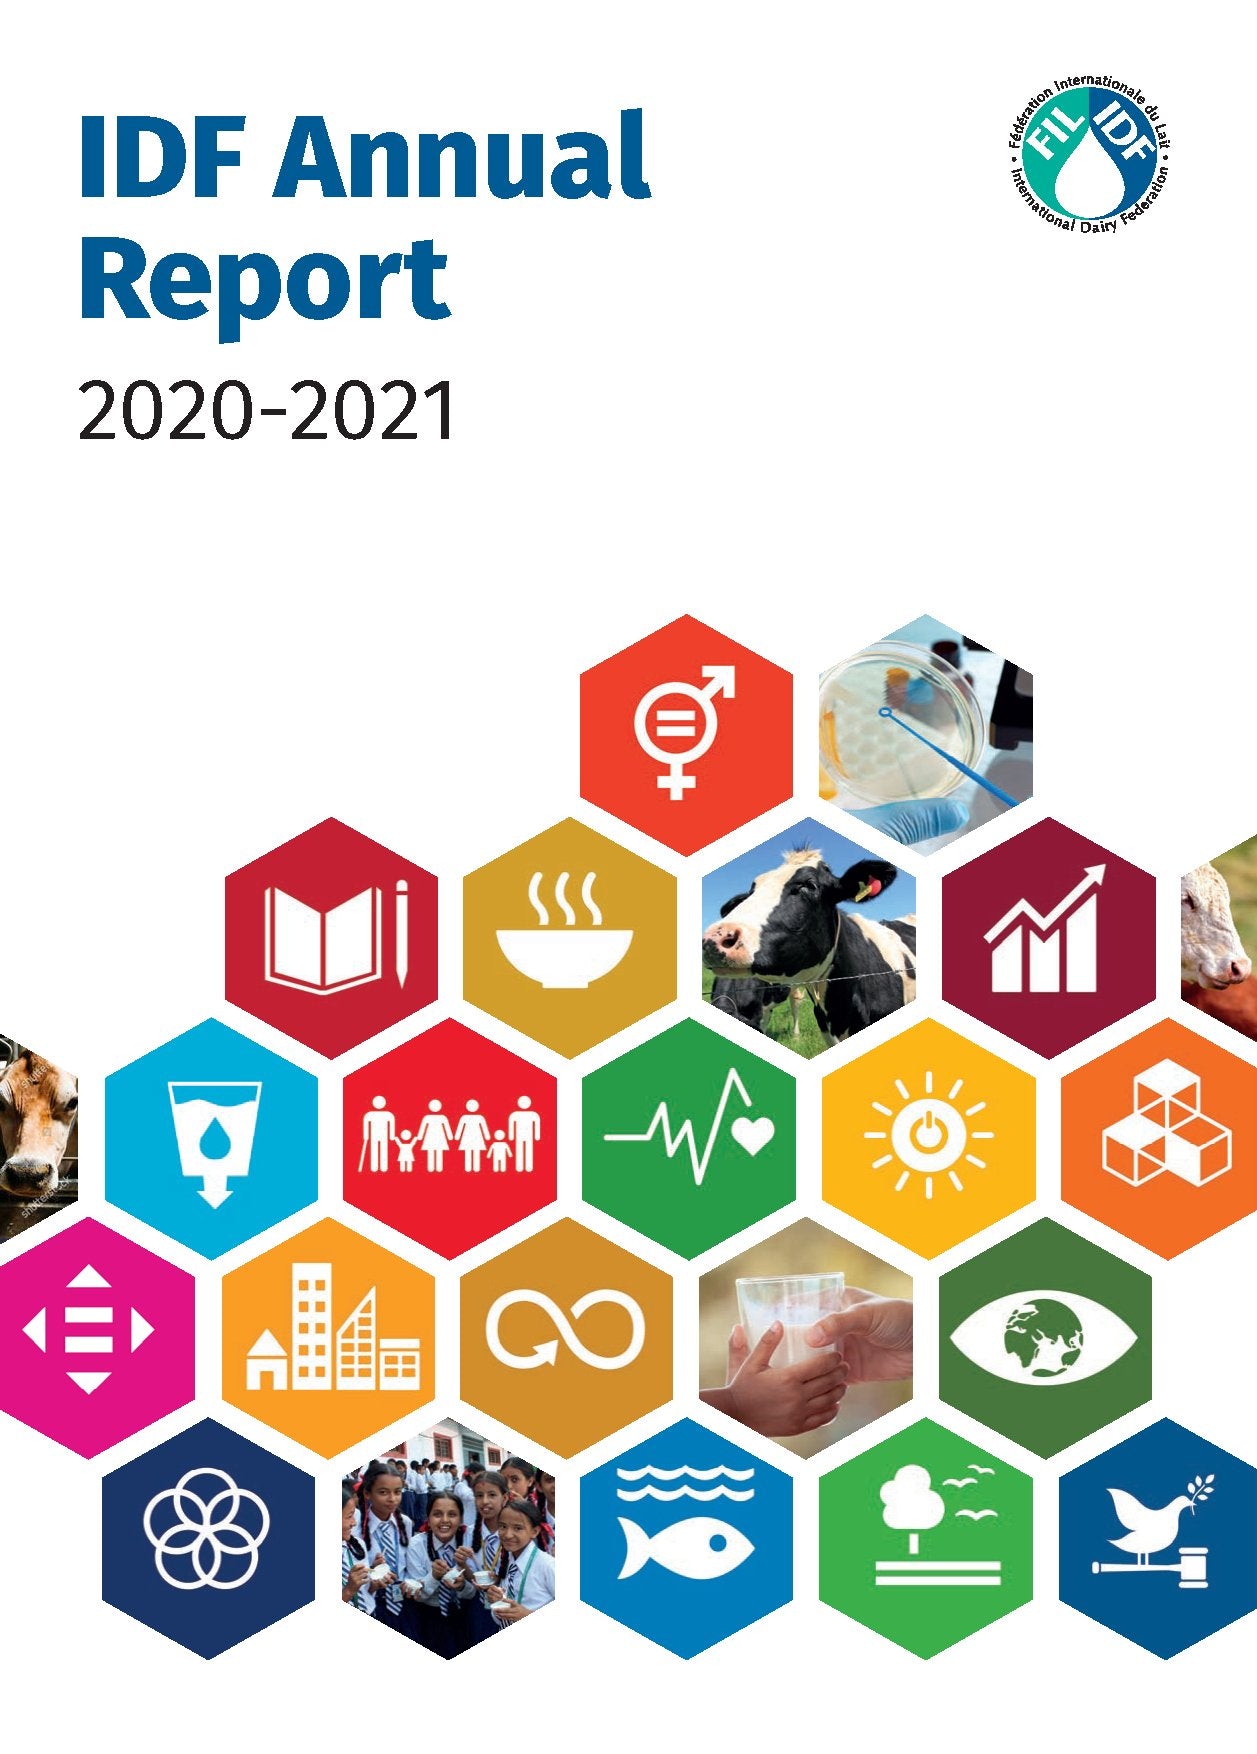 IDF Annual Report 2020-2021 - FIL-IDF